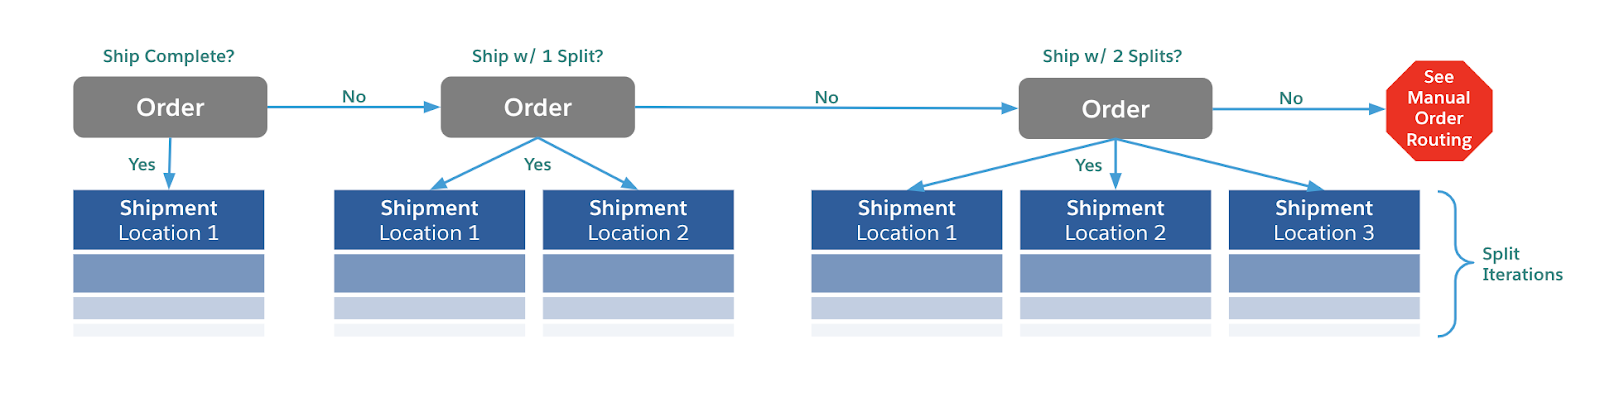 Diagrama que mostra três cenários de frete: envio de um único local, envio de dois locais e envio de três locais.